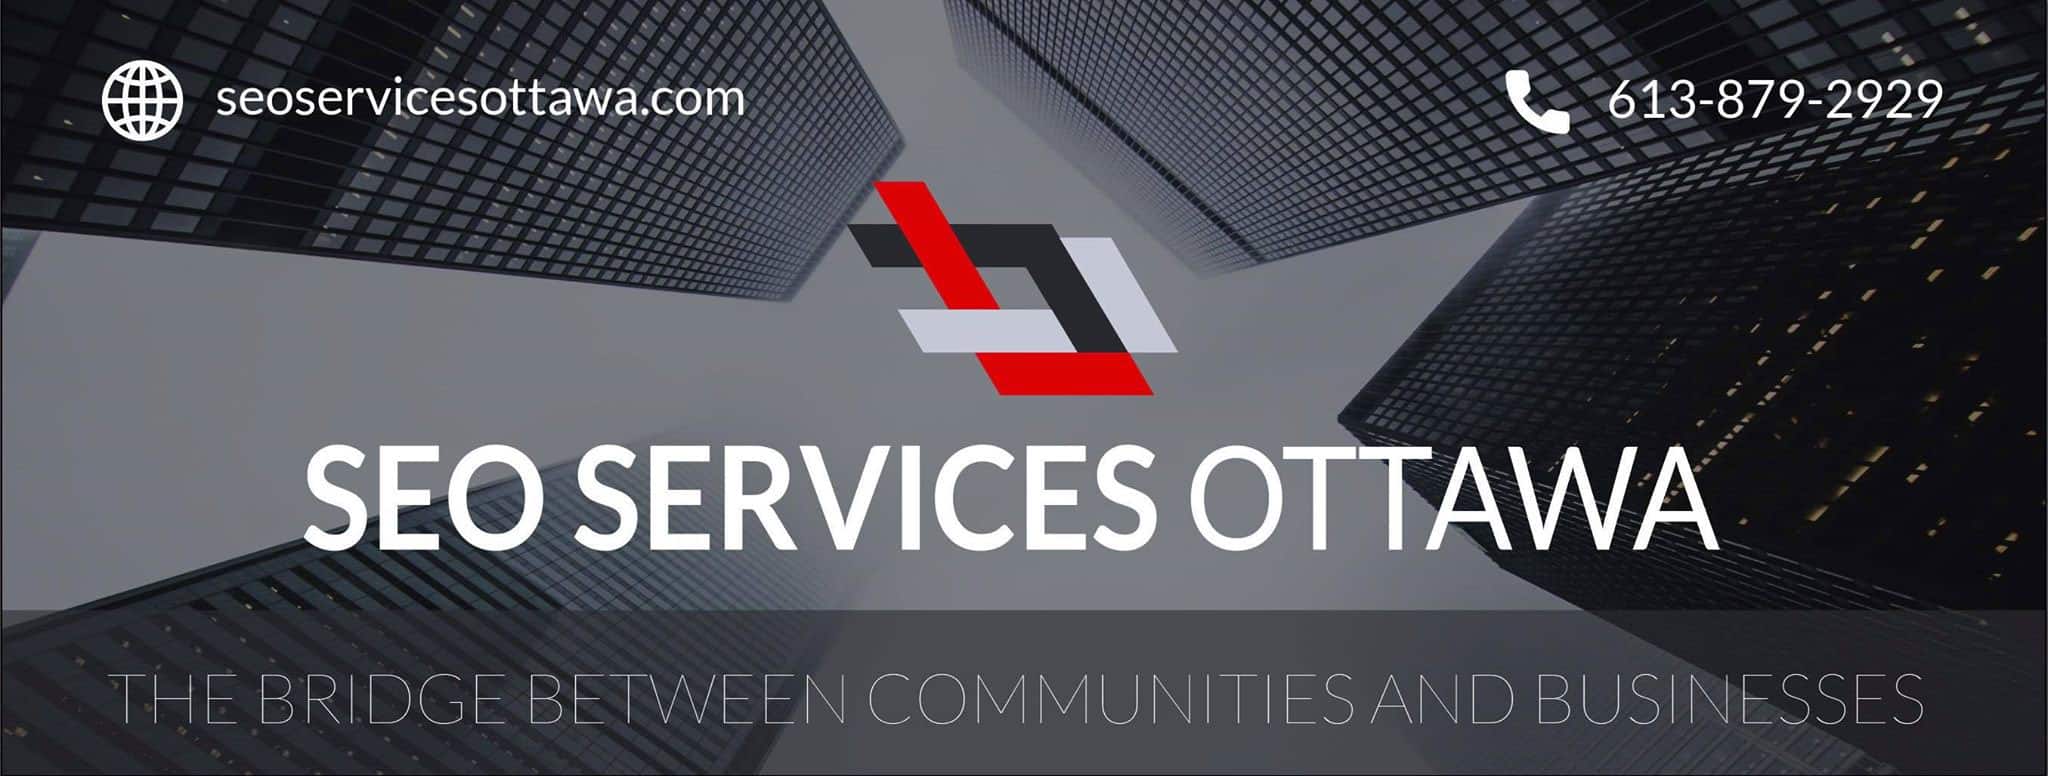 SEO Services Ottawa Inc